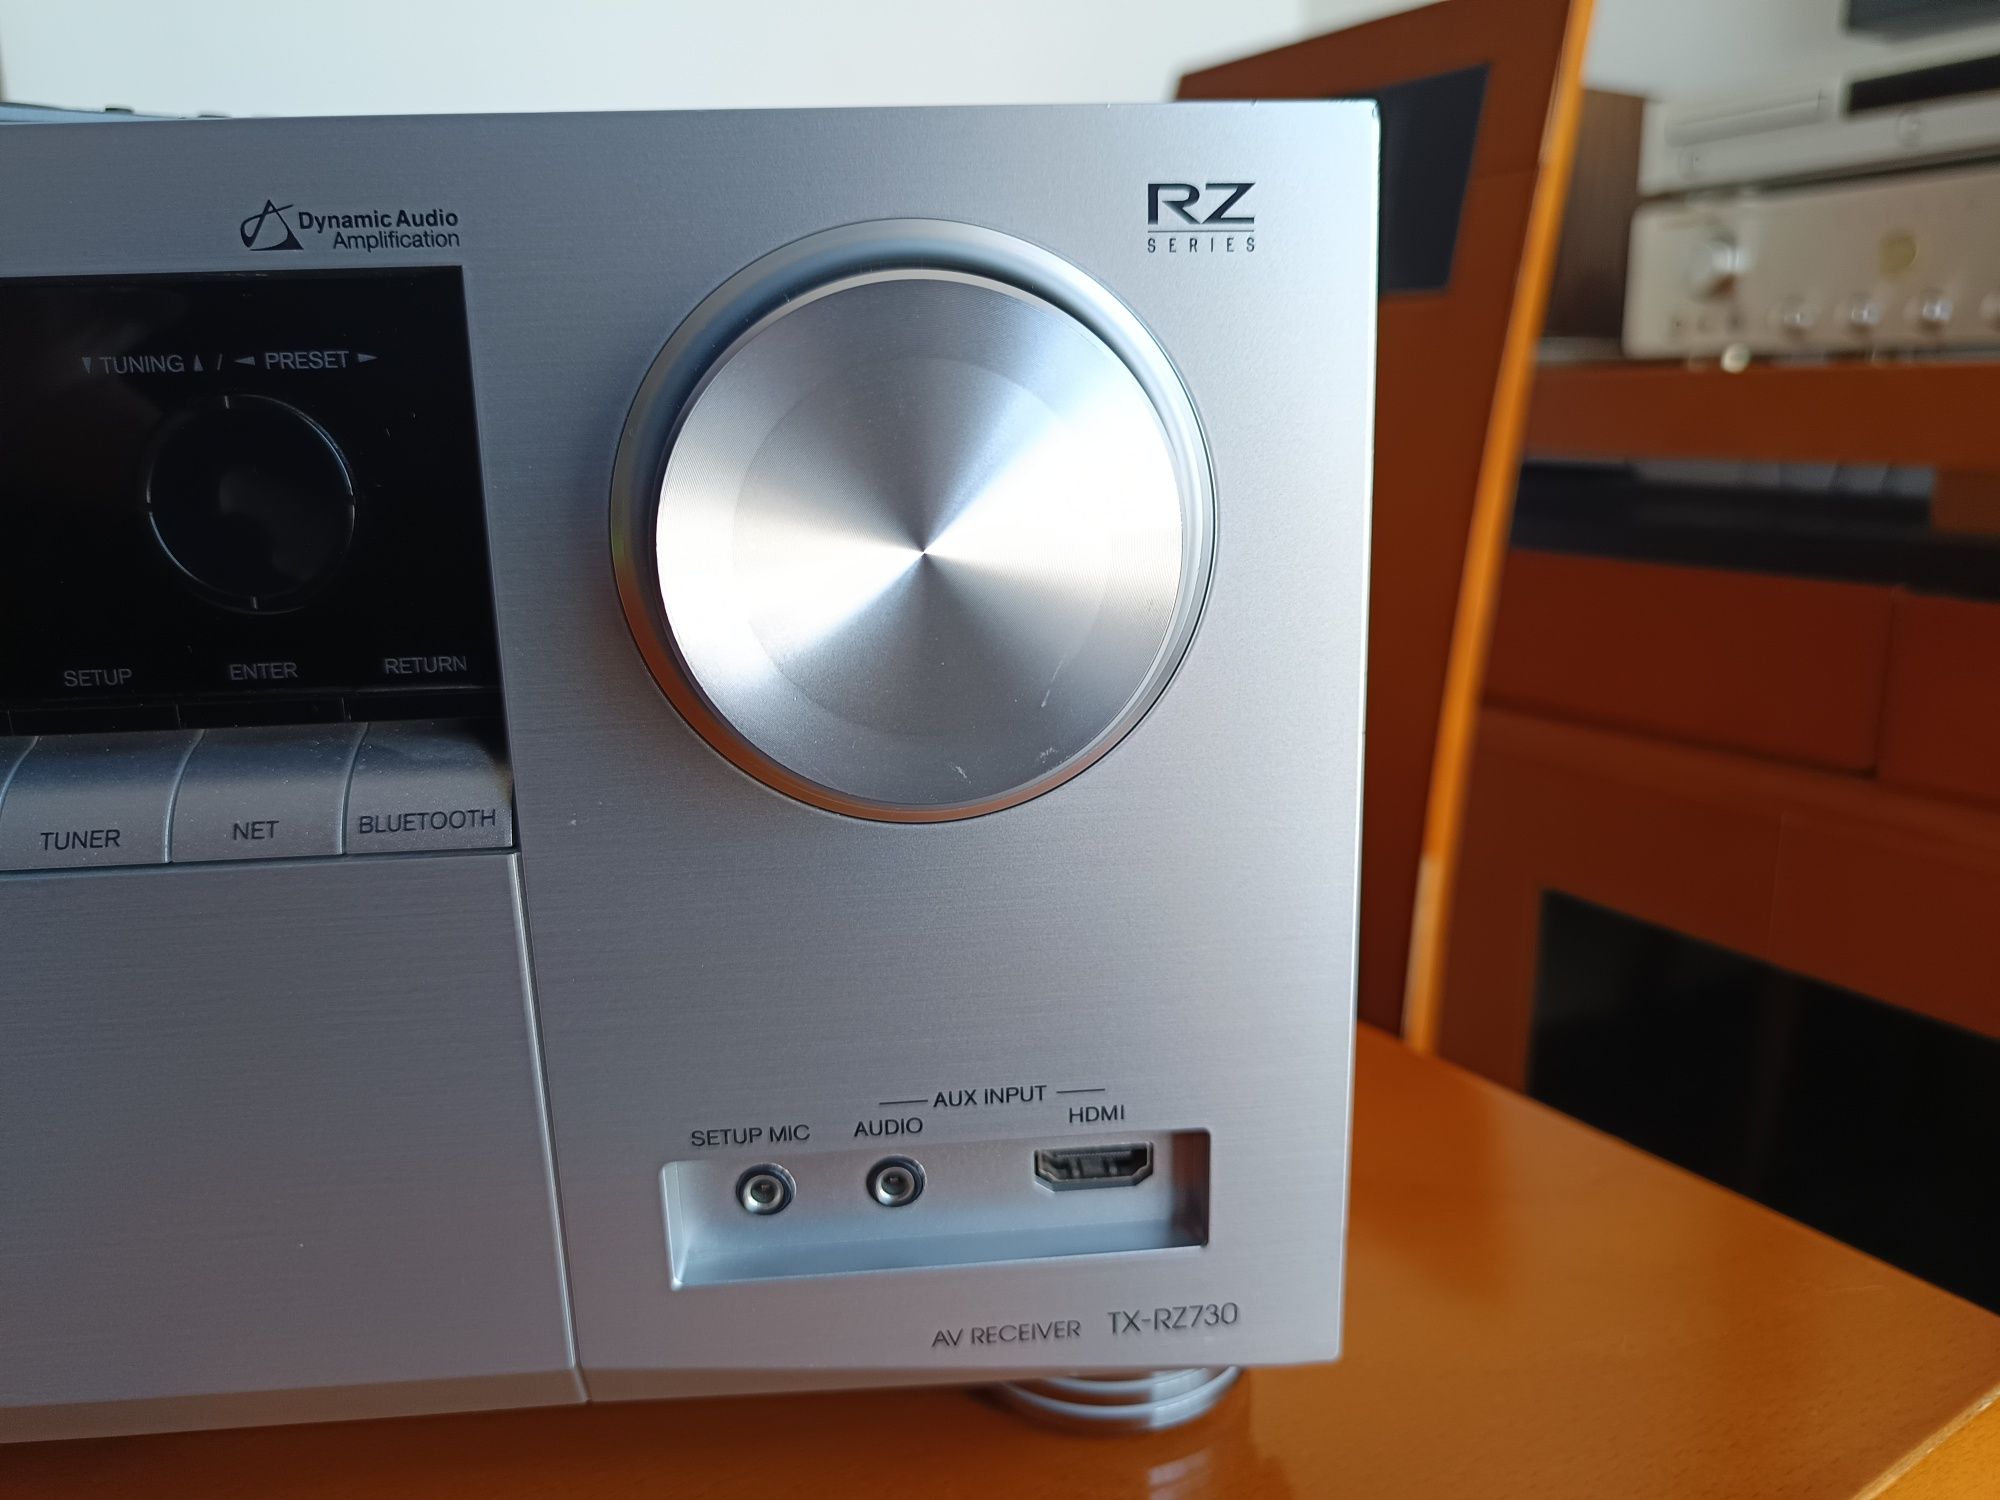 Amplificador RZ series ONKYO TX RZ 730  9.2 canais e D. Atmos